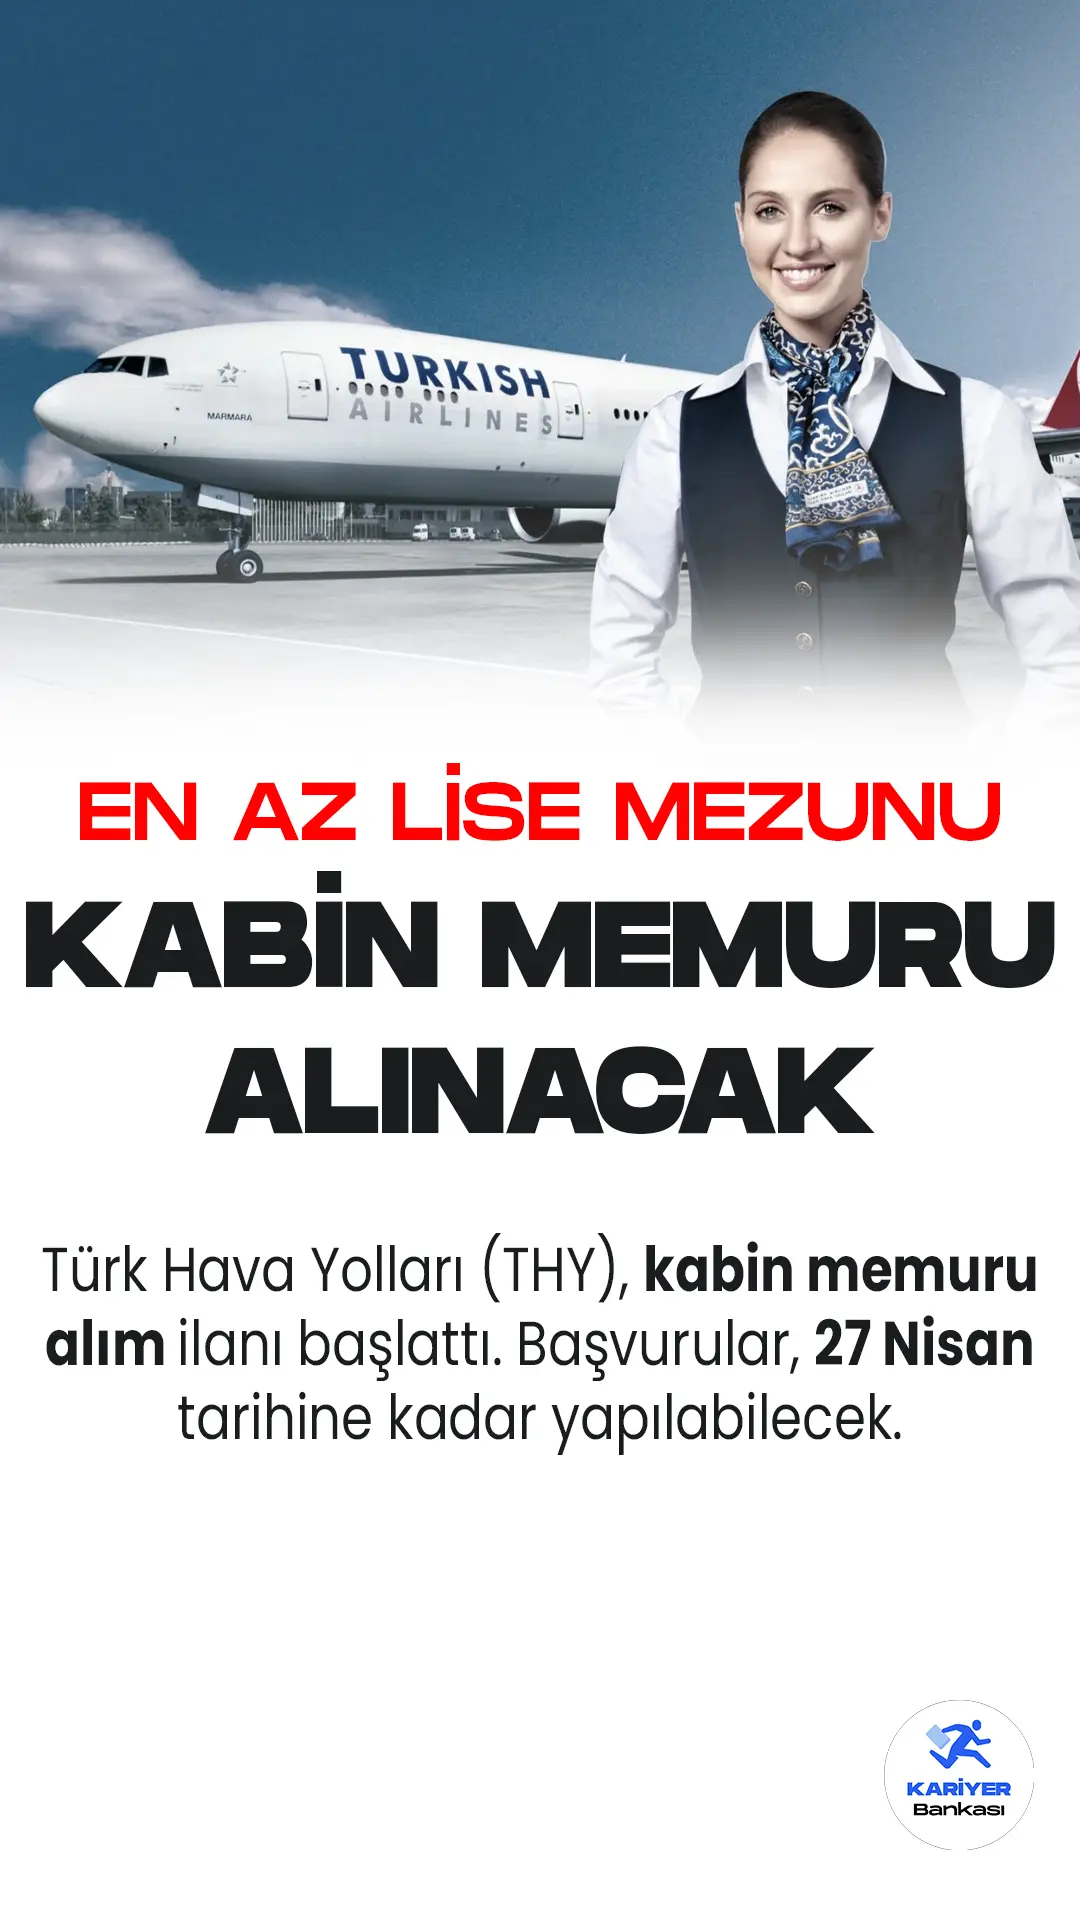 Türk Hava Yolları (THY), kabin memuru alım ilanı başlattı. Başvurular, 27 Nisan tarihine kadar yapılabilecek.